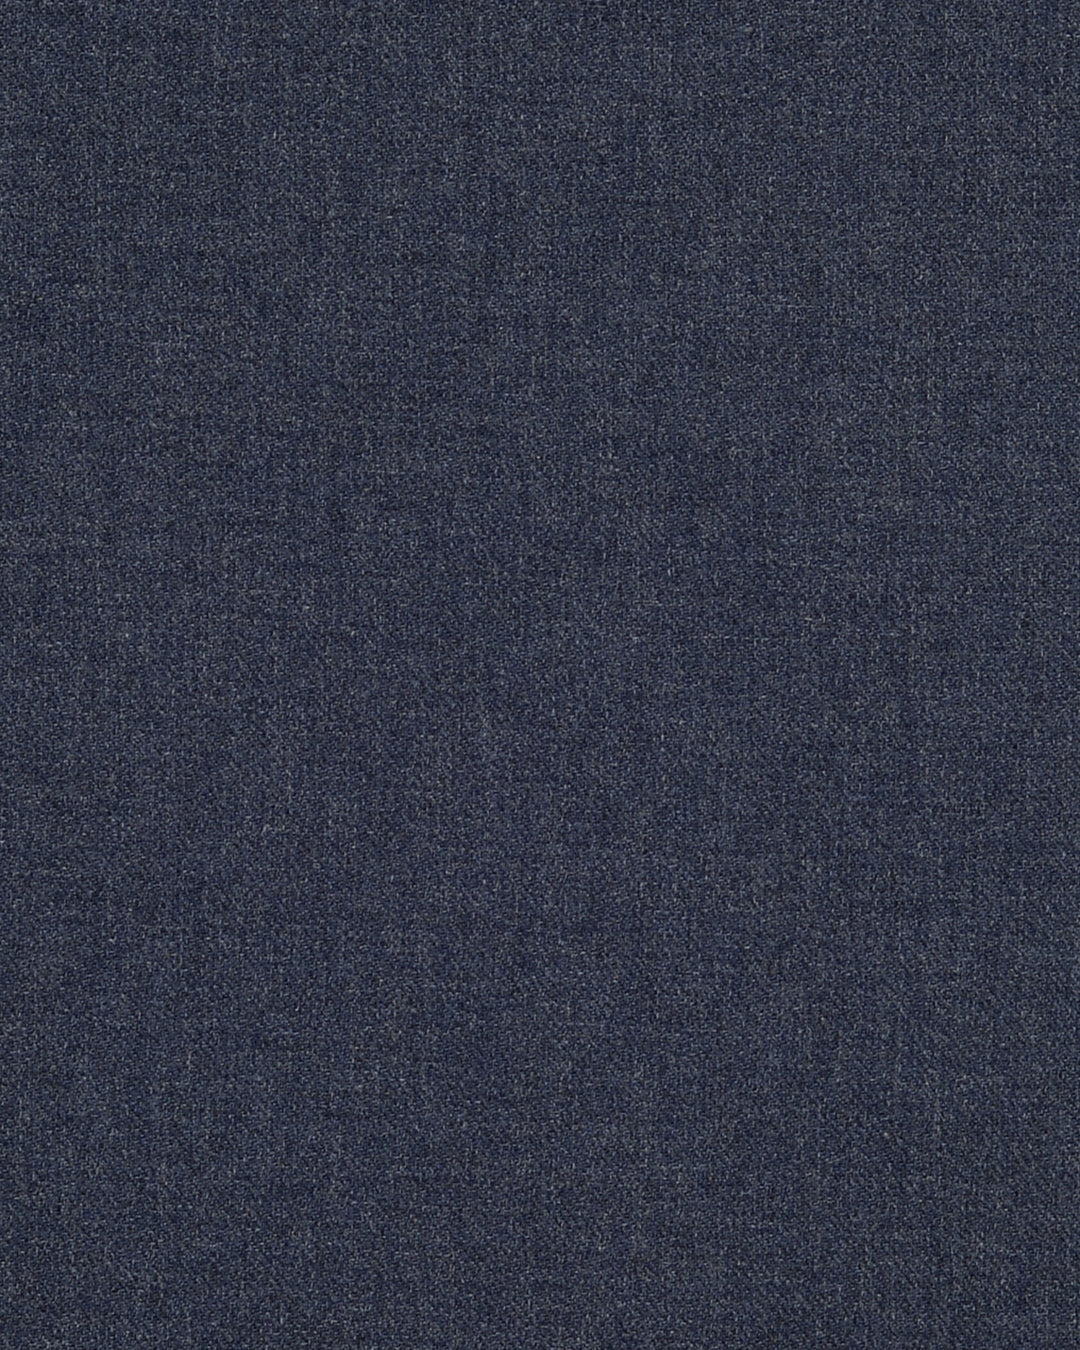 Midnight Blue Soft Cotton Flannel